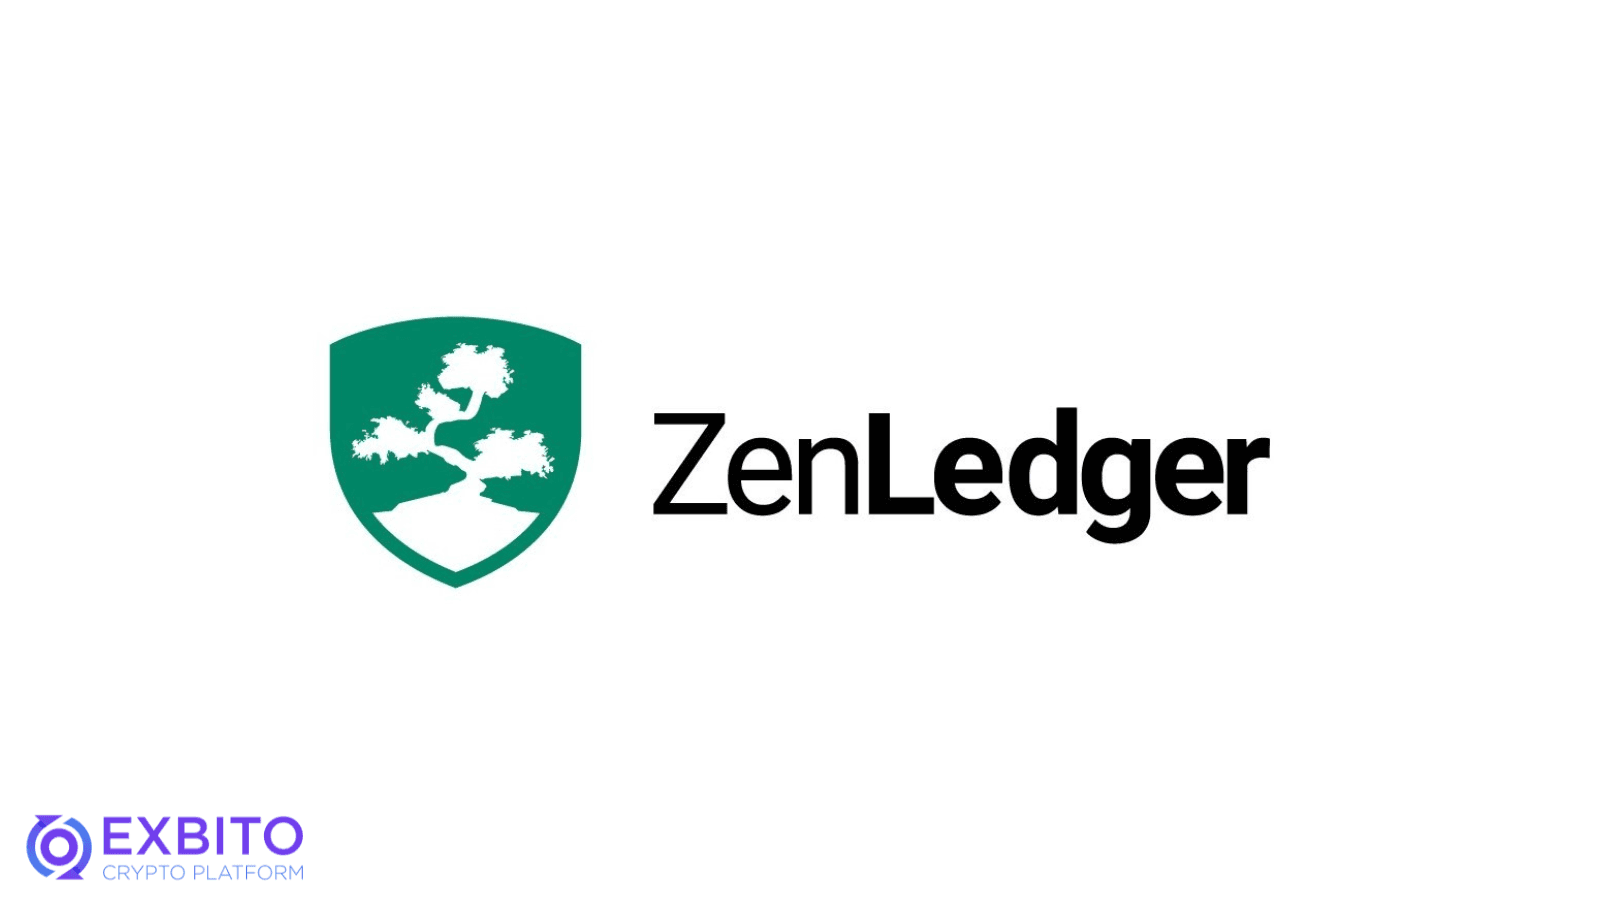 نرم افزار مالیاتی زن لجر (ZenLedger)